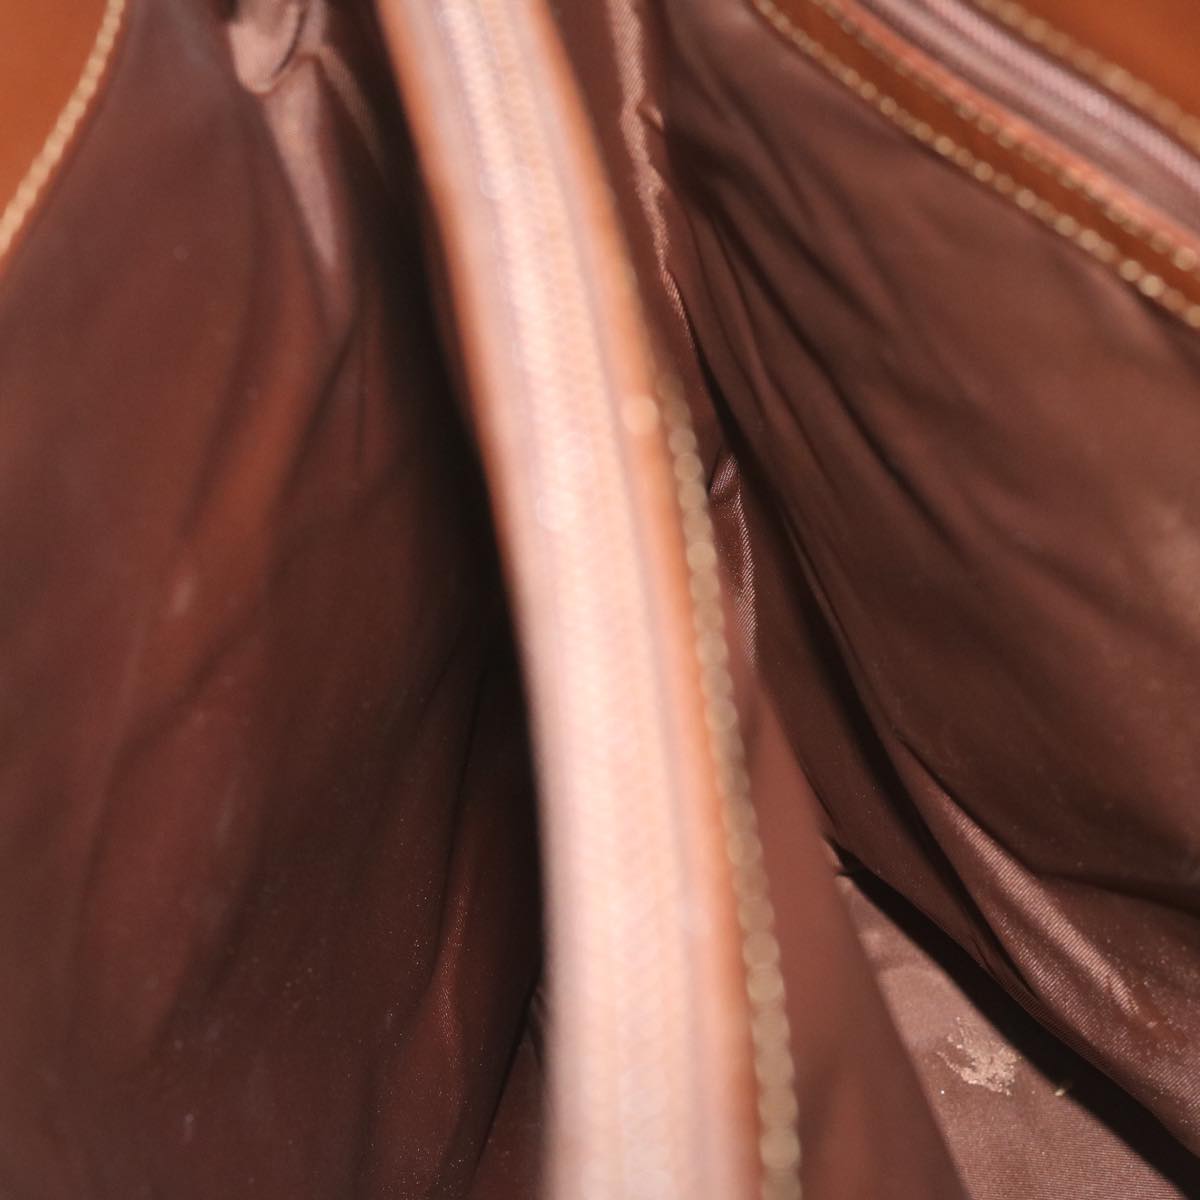 Burberrys Nova Check Shoulder Bag PVC Leather Beige Auth 63774